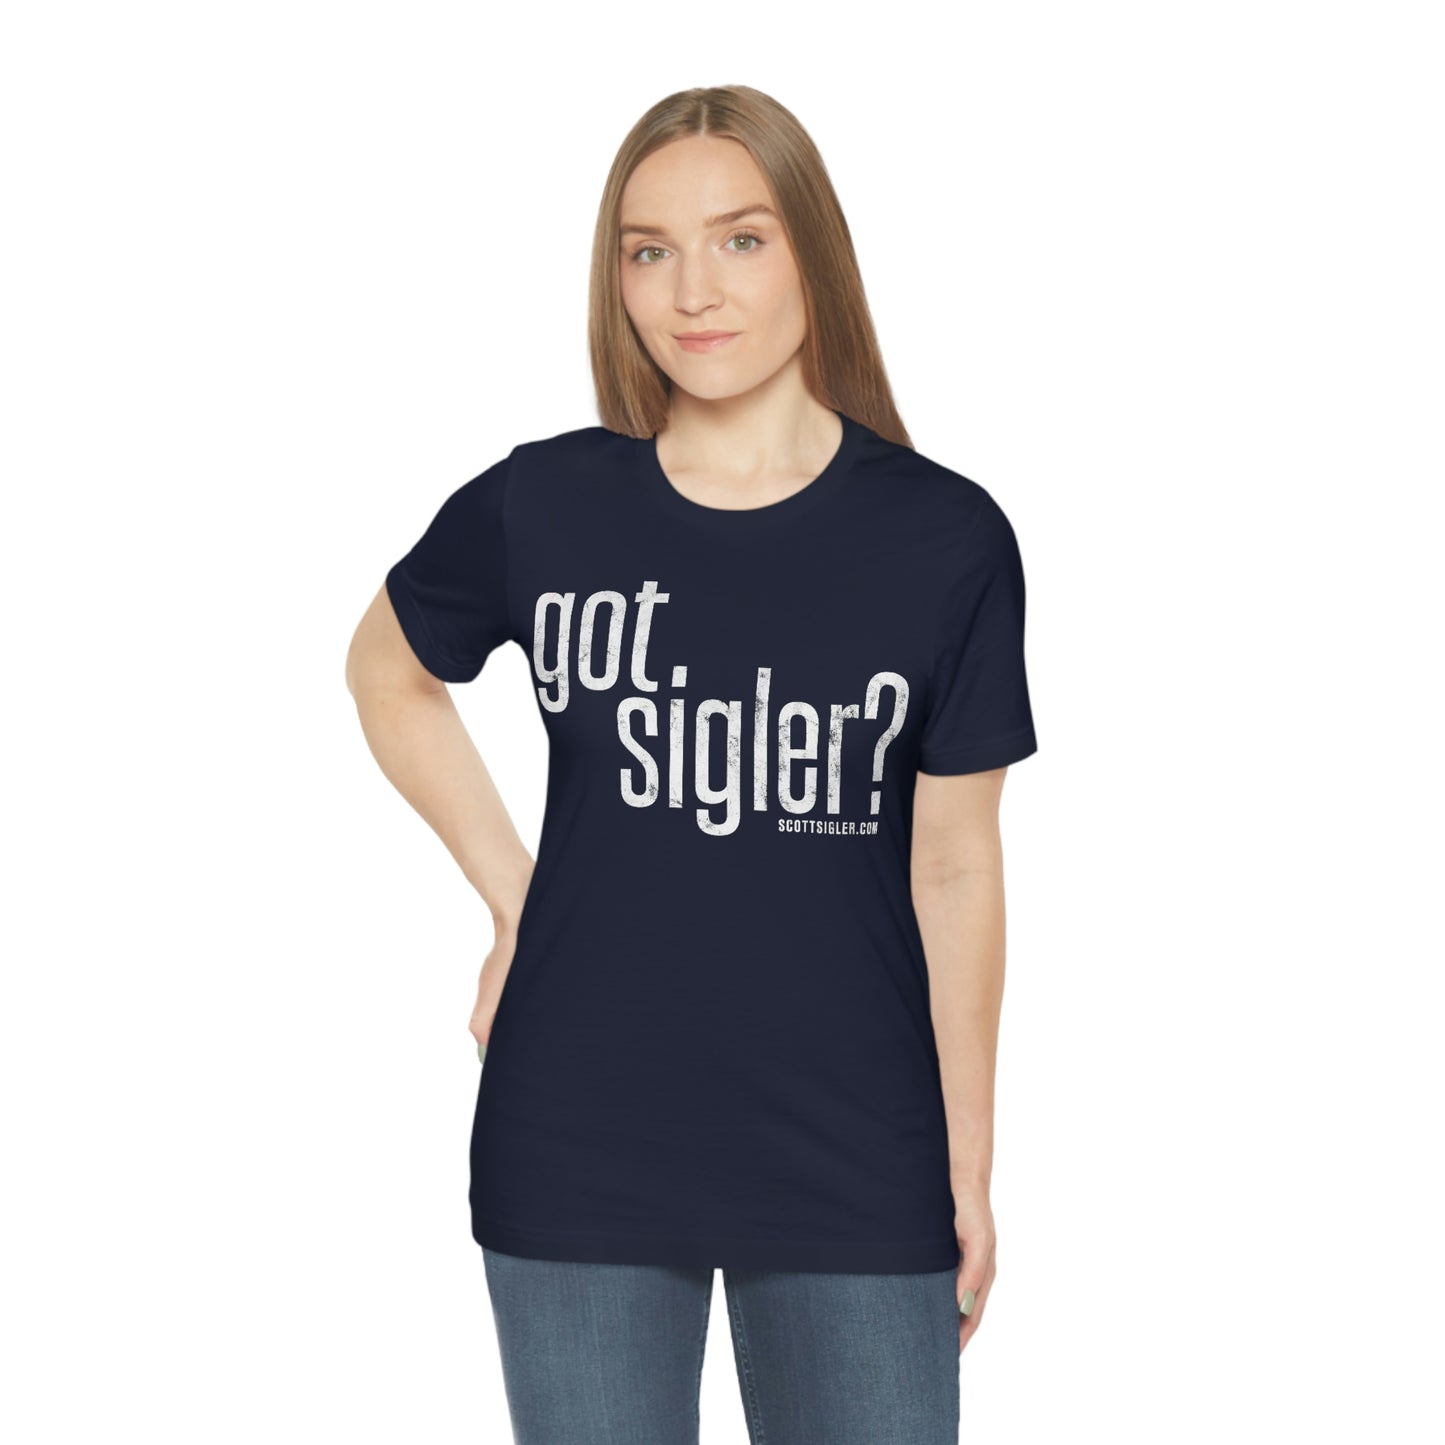 Got Sigler?